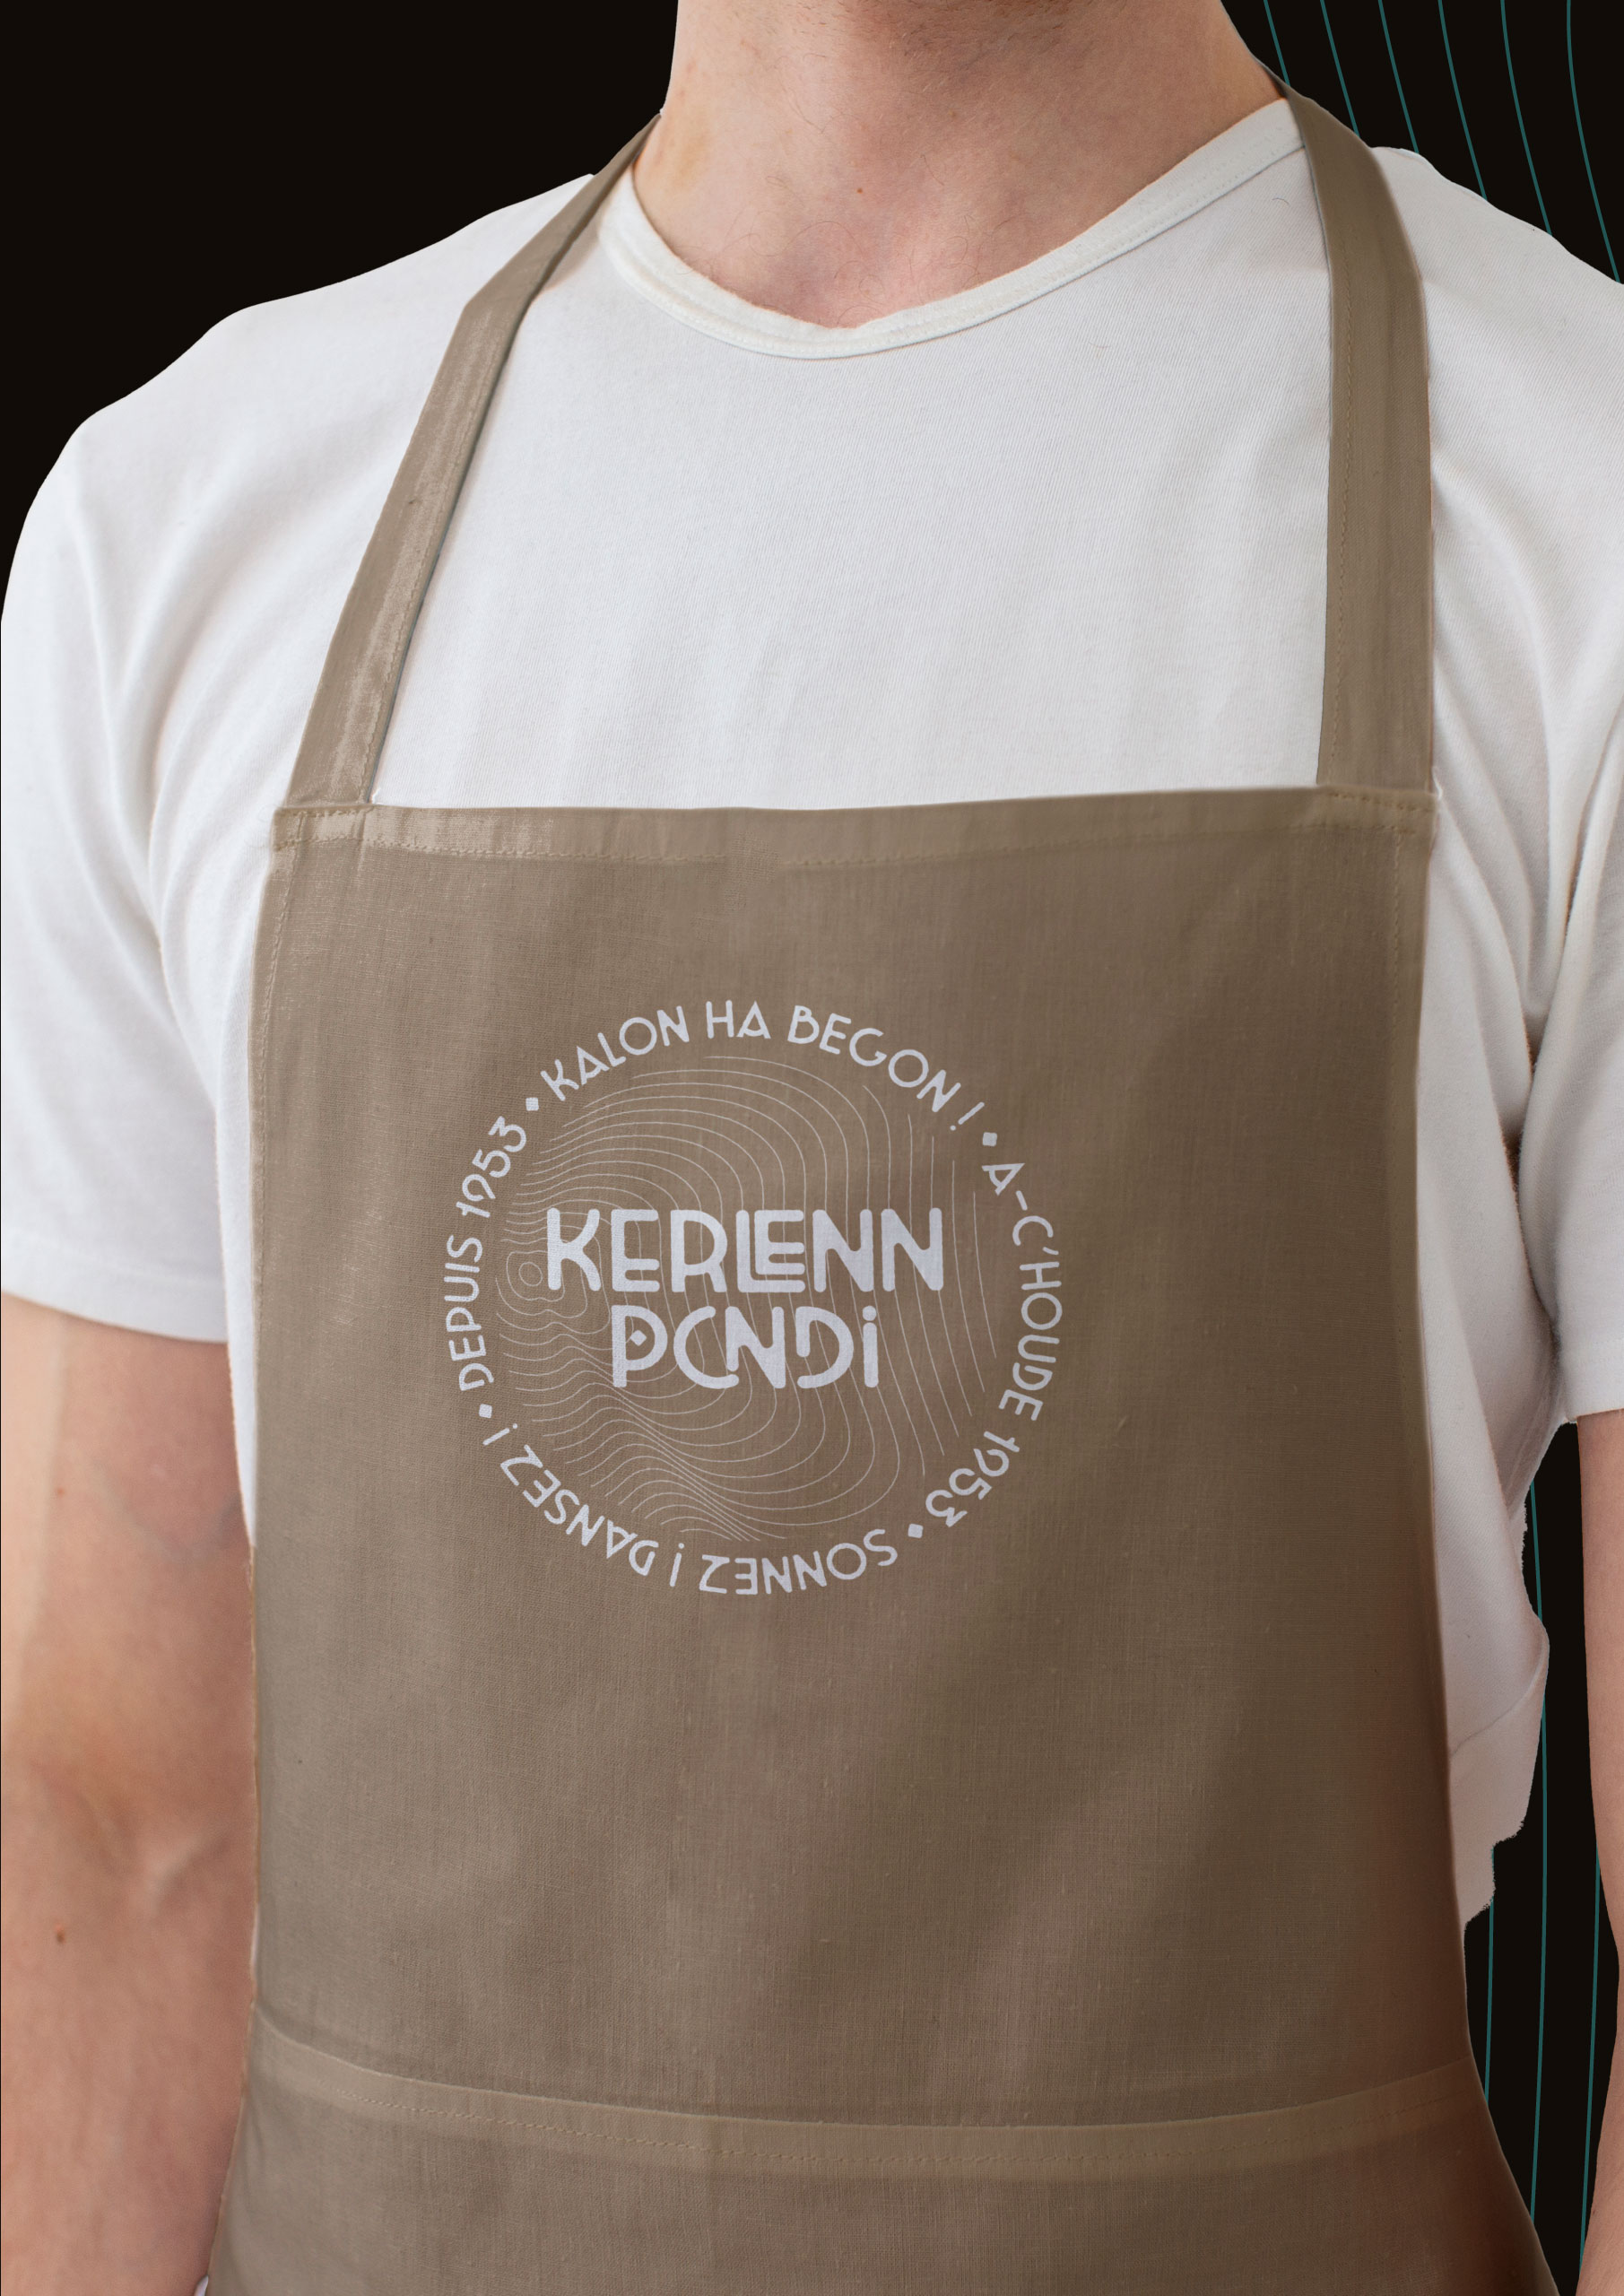 Goodies 70 ans de la Kerlenn Pondi tablier